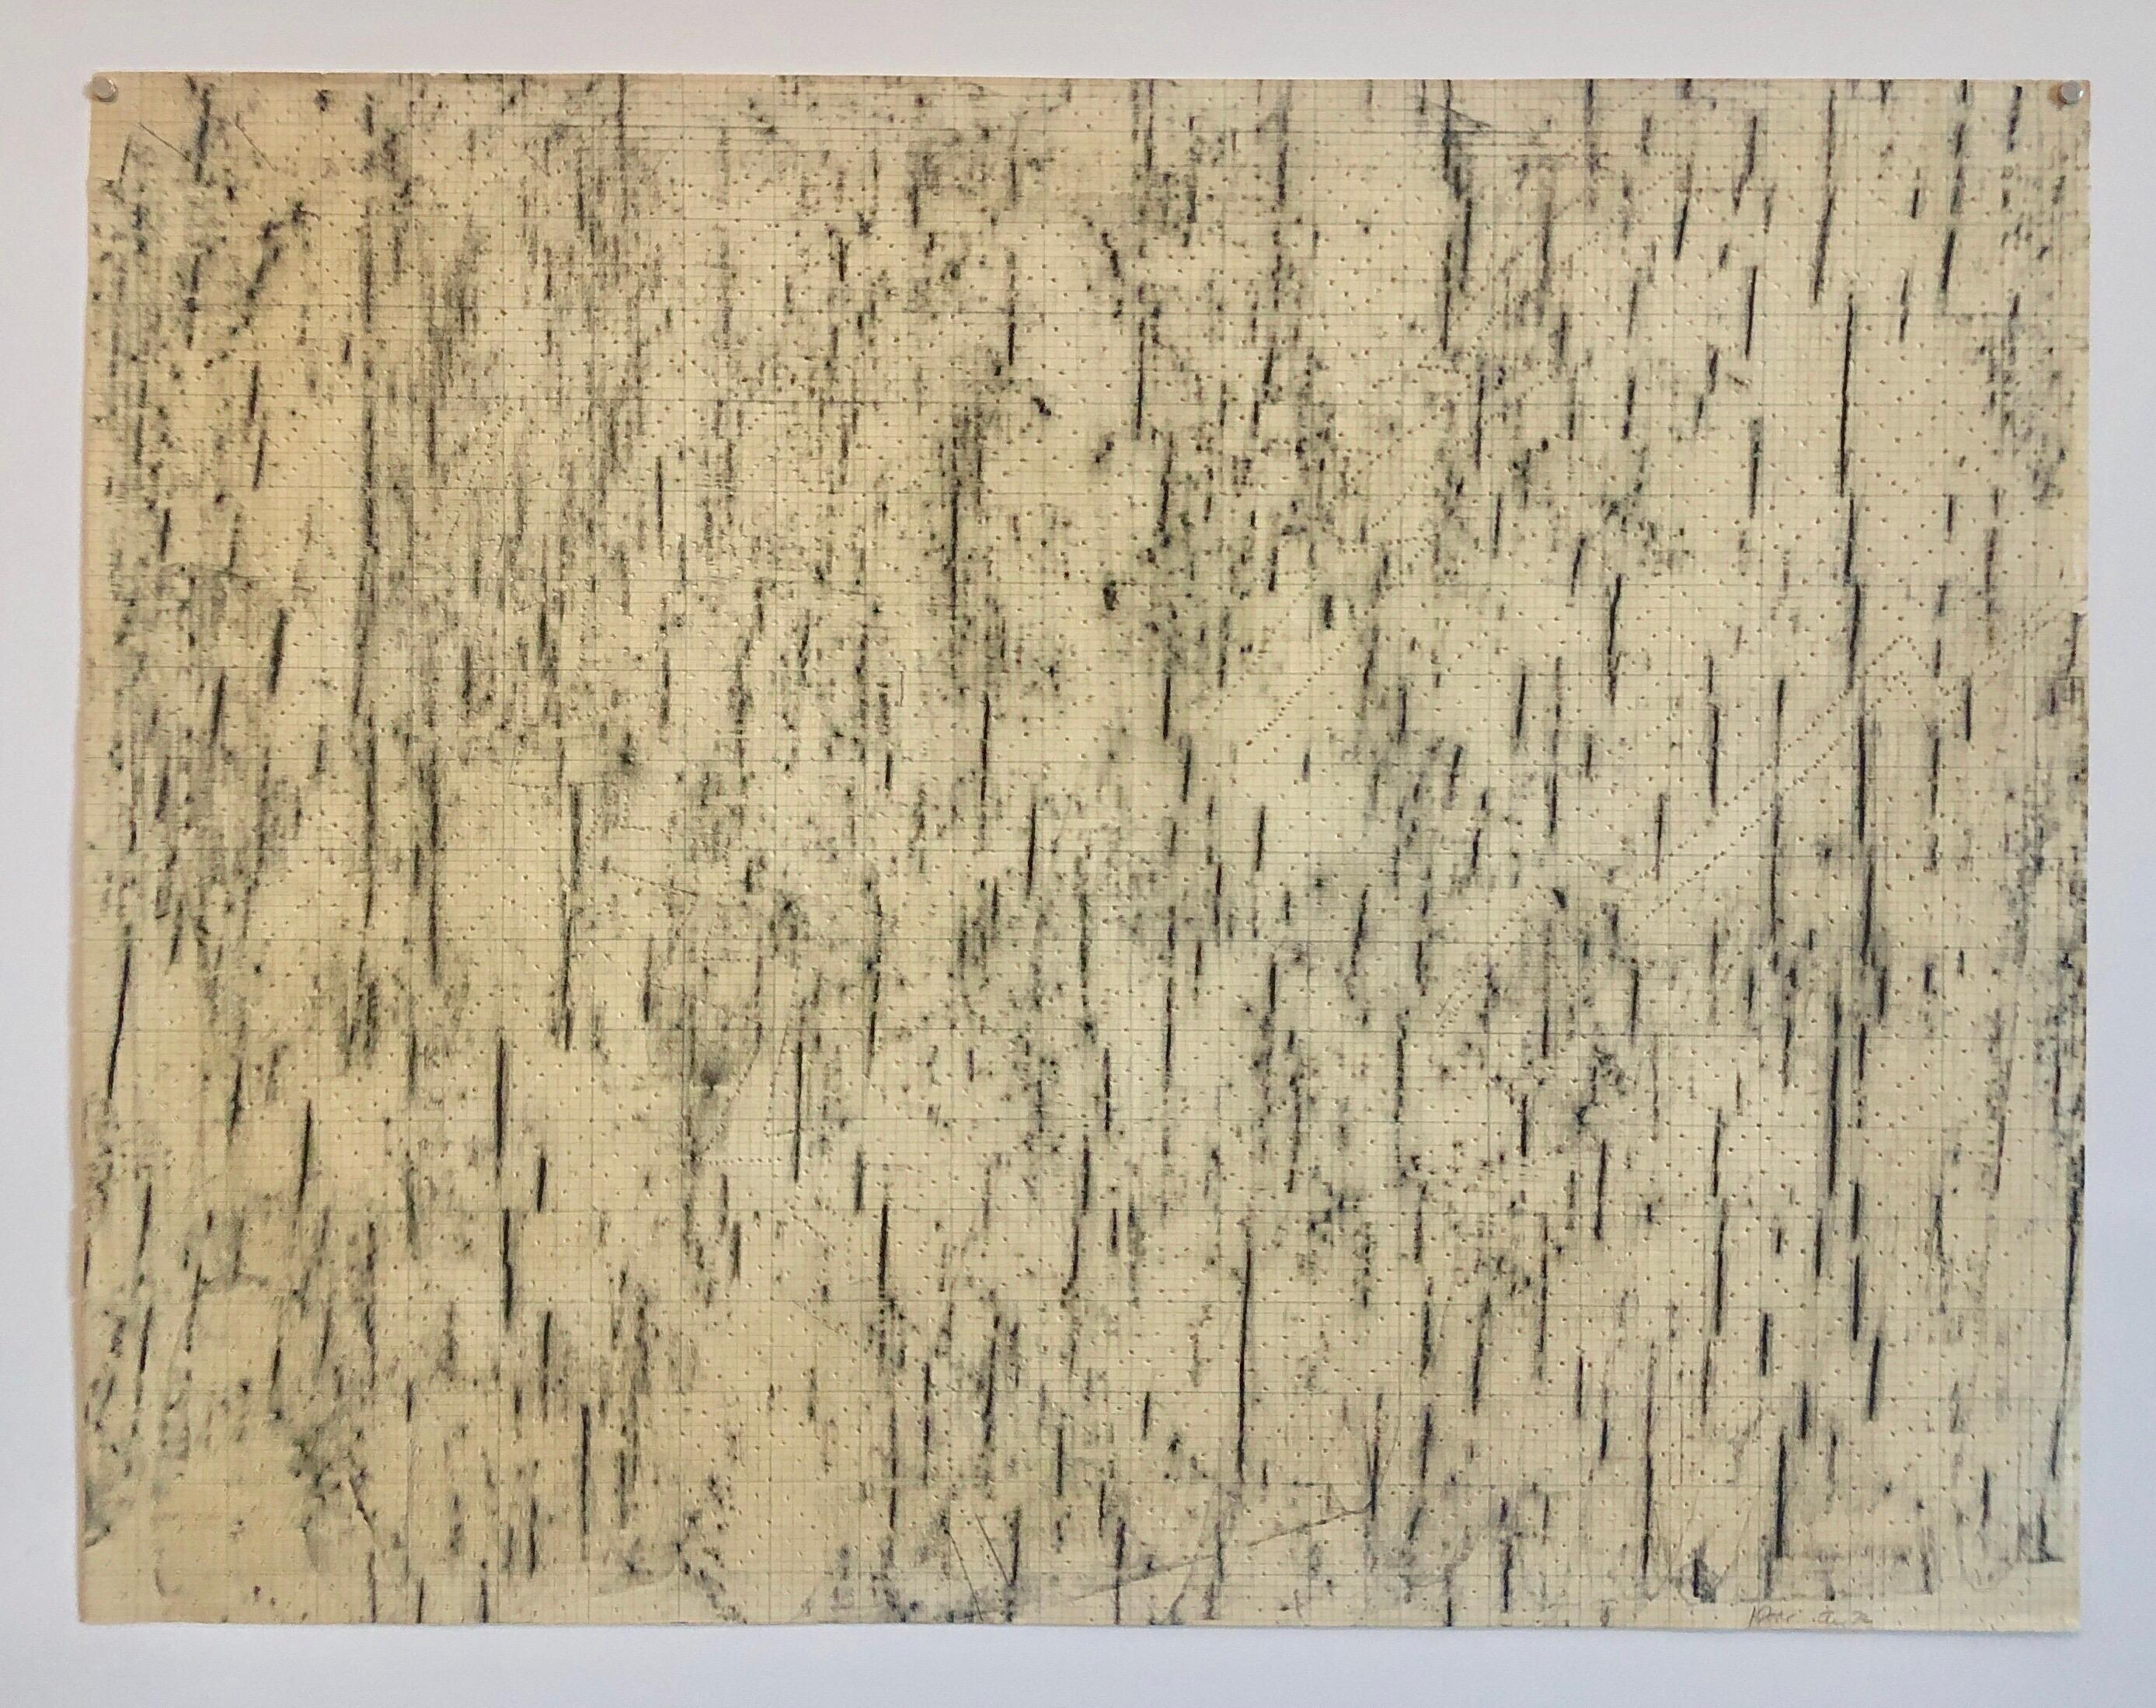 Abstrakt-expressionistische Bleistiftzeichnung, durchbrochenes Papier, Gemälde-Muster, Dekoration – Art von Katherine Porter